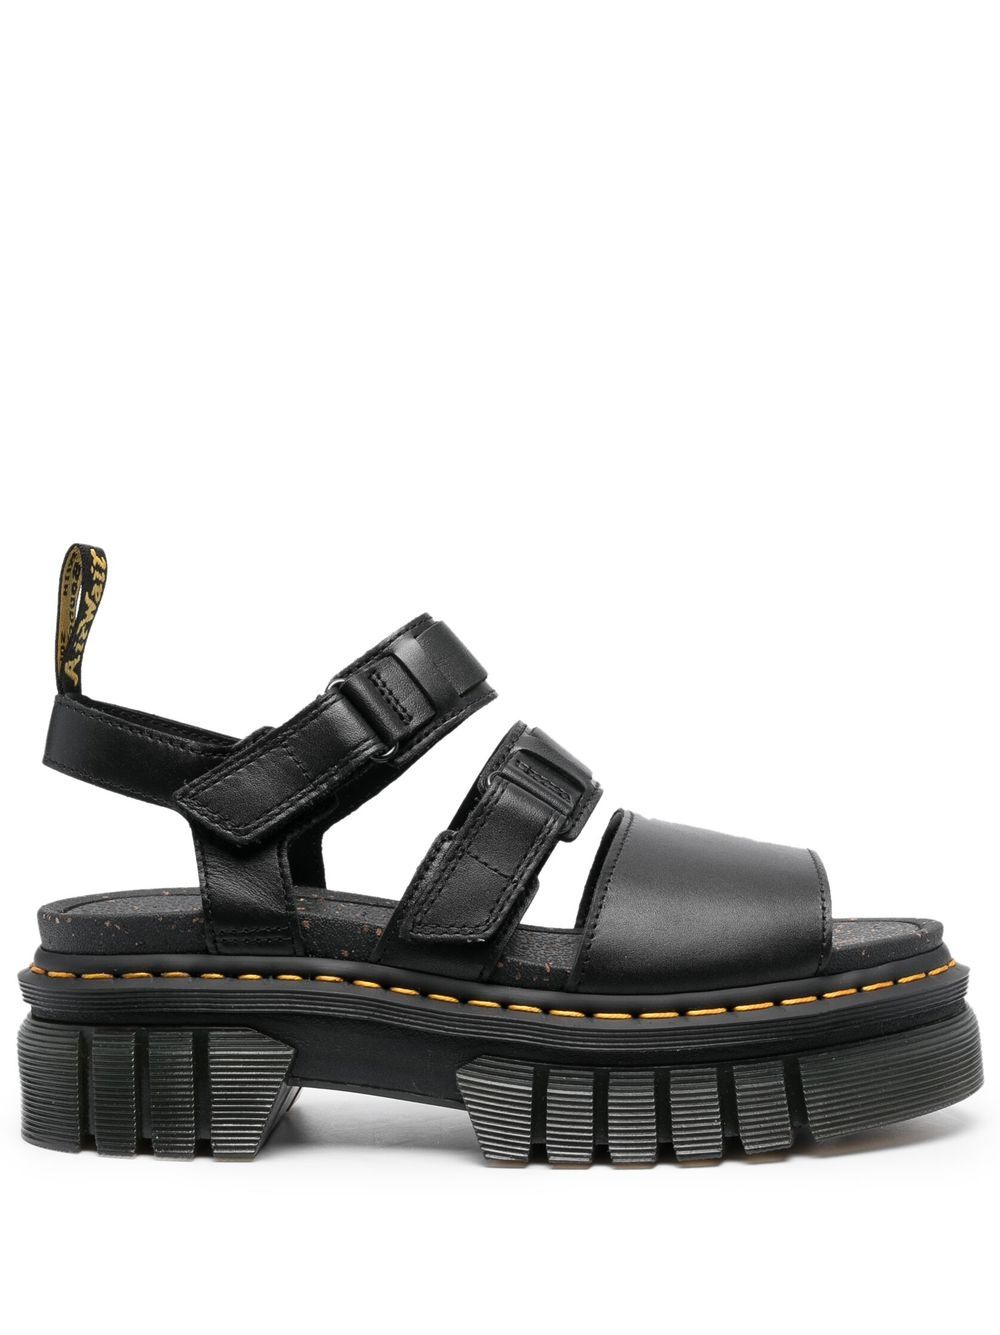 Dr. Martens Ricki leather platform sandals - Black von Dr. Martens